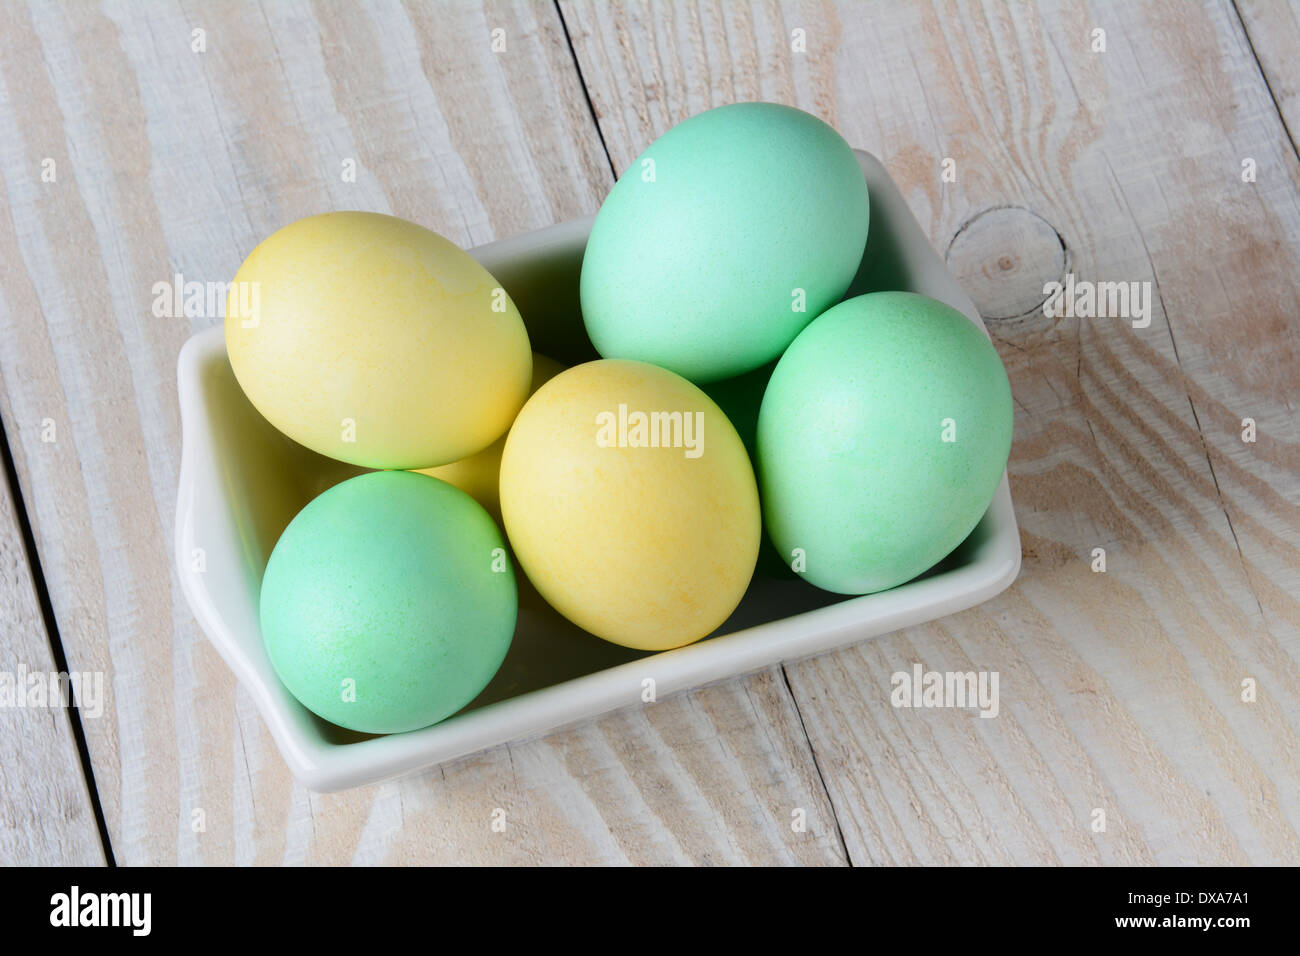 Un alto ángulo de visualización de un recipiente rectangular de pastel de huevos de Pascua. El tazón blanco está lleno de huevos teñidos de verde y amarillo Foto de stock